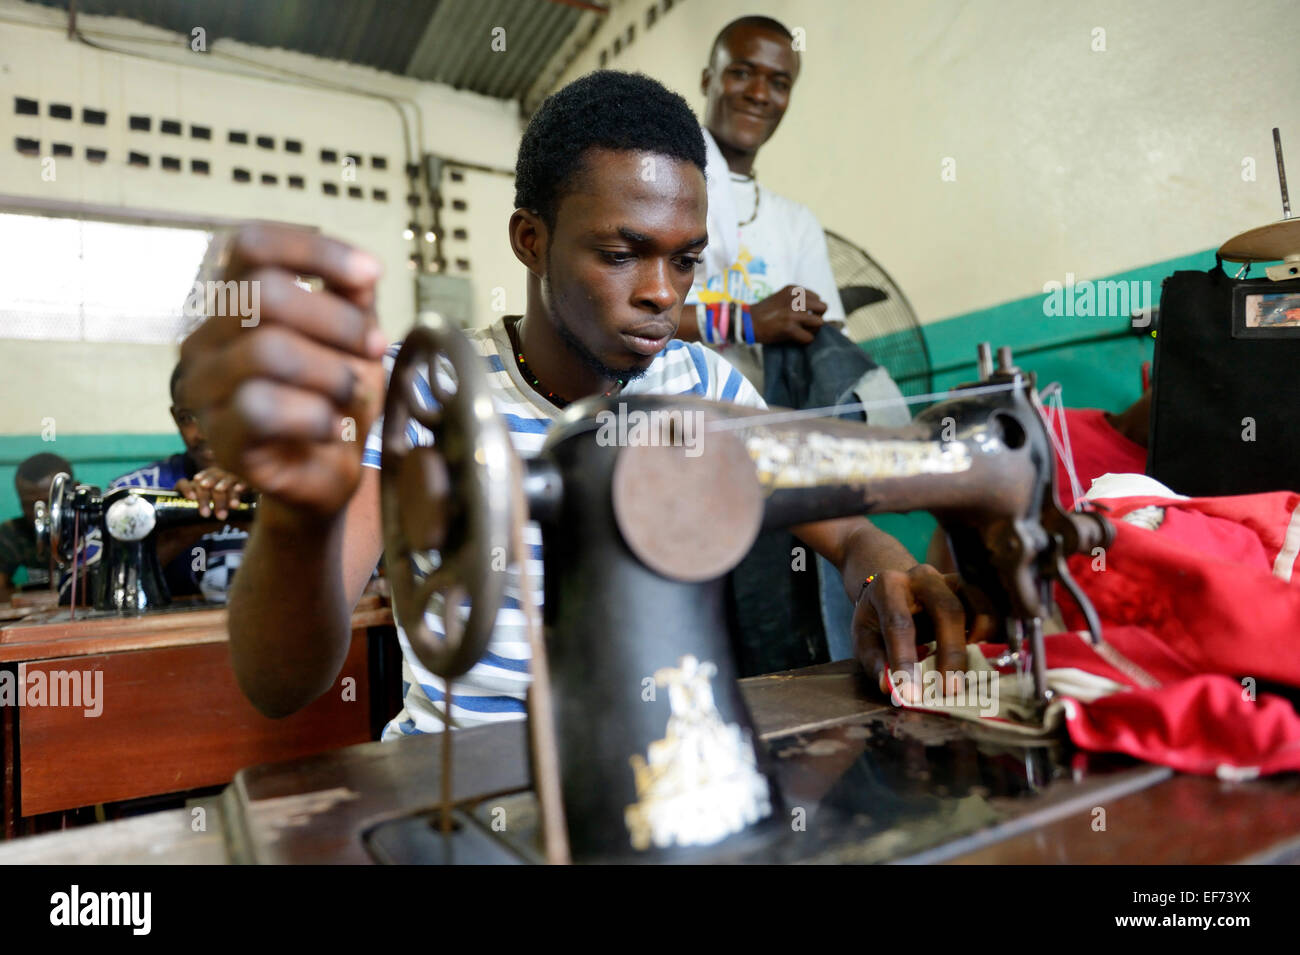 Jeune homme travaillant sur une machine à coudre couture d'apprentissage l'artisanat, l'adaptation de l'école Missions Salésiennes Banque D'Images